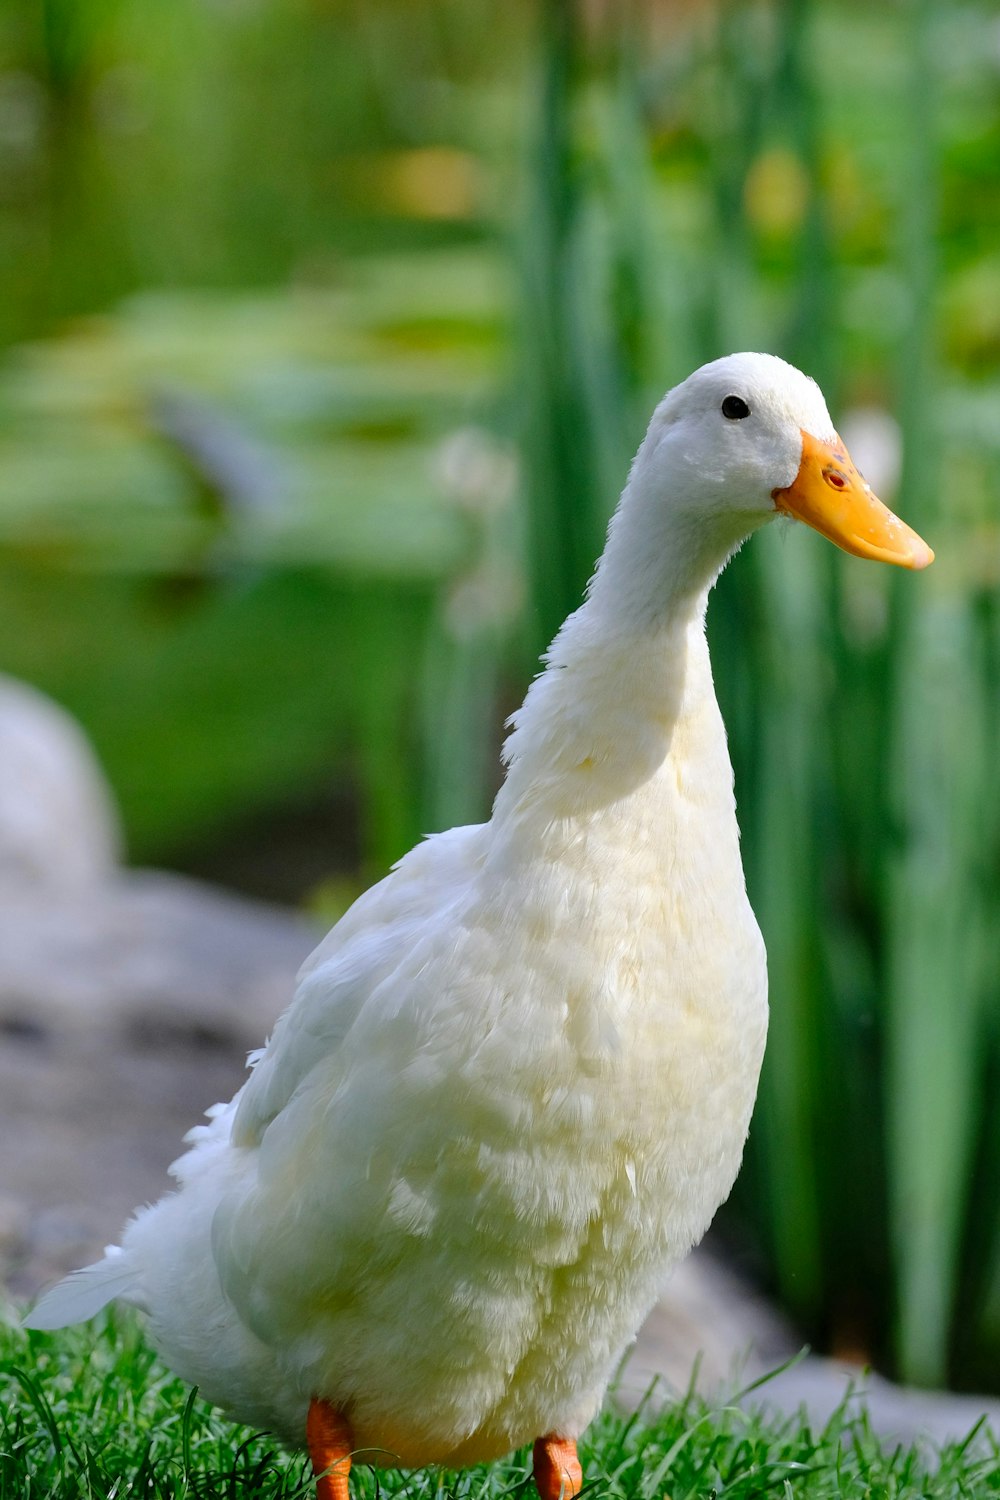 white duck in tilt shift lens